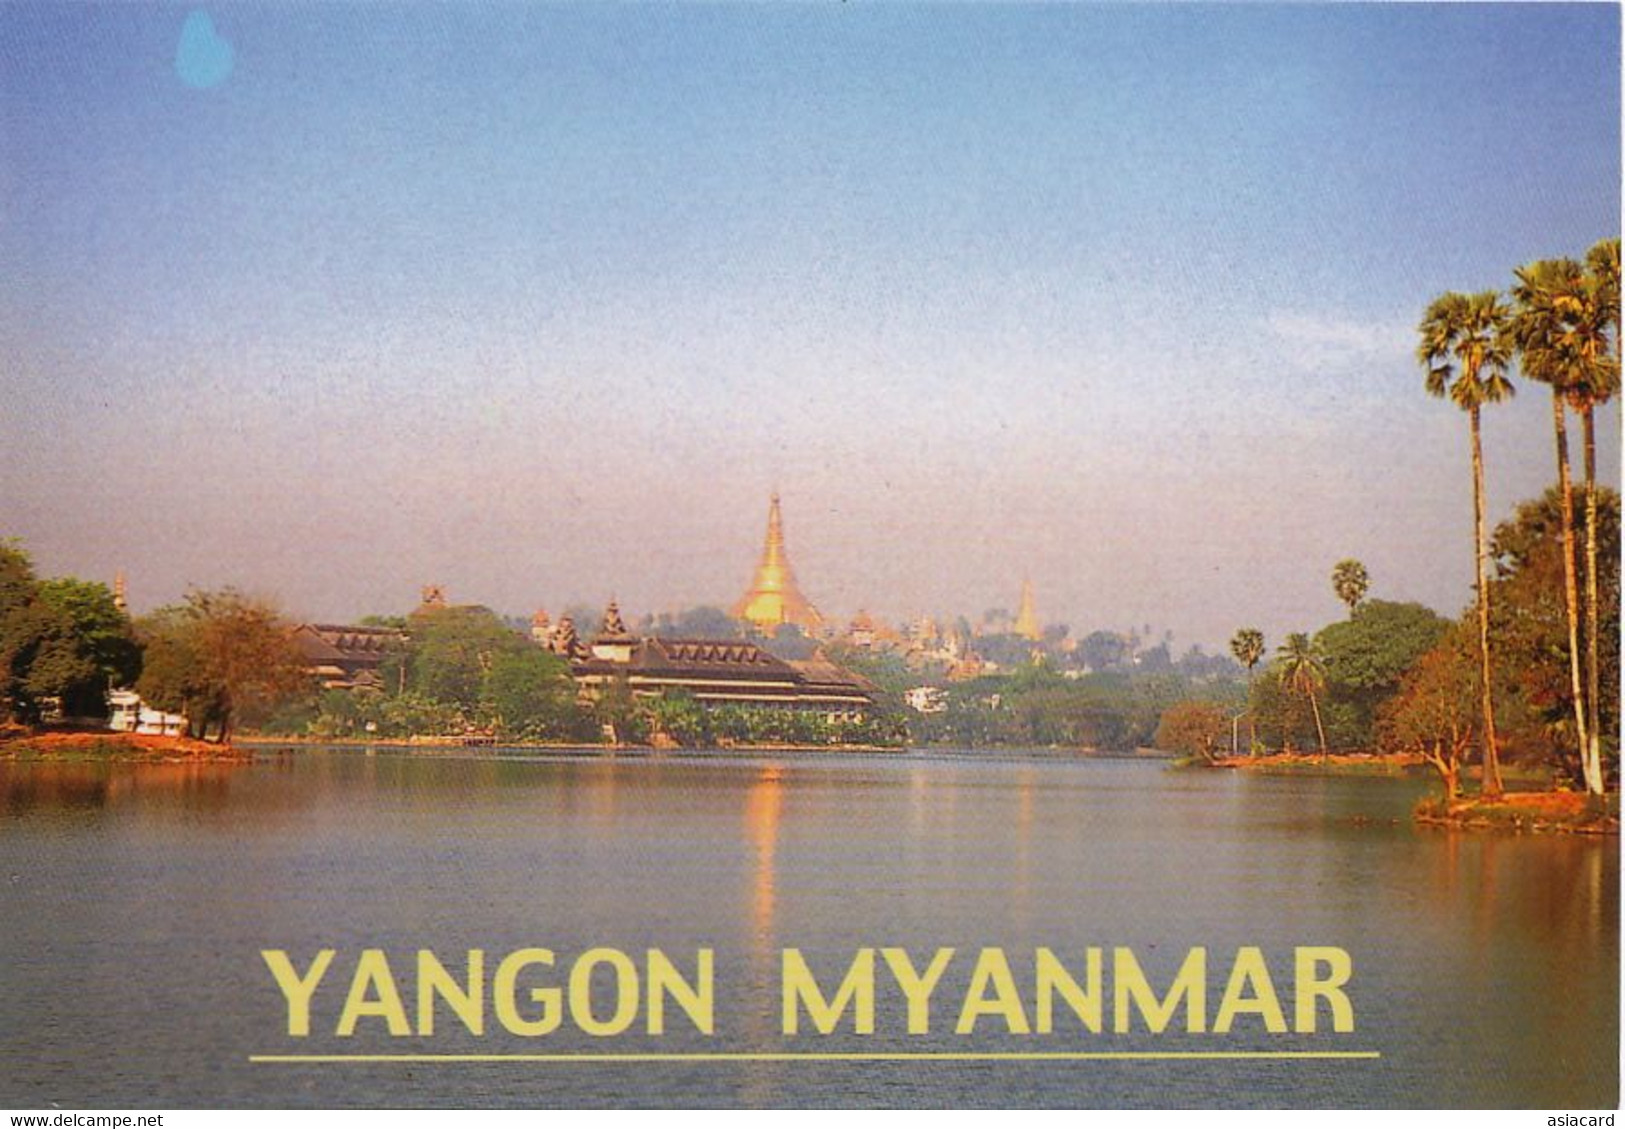 Yangon Myanmar  Royal Lake And Golden Pagoda P. Used  To Autreches Oise - Myanmar (Burma)